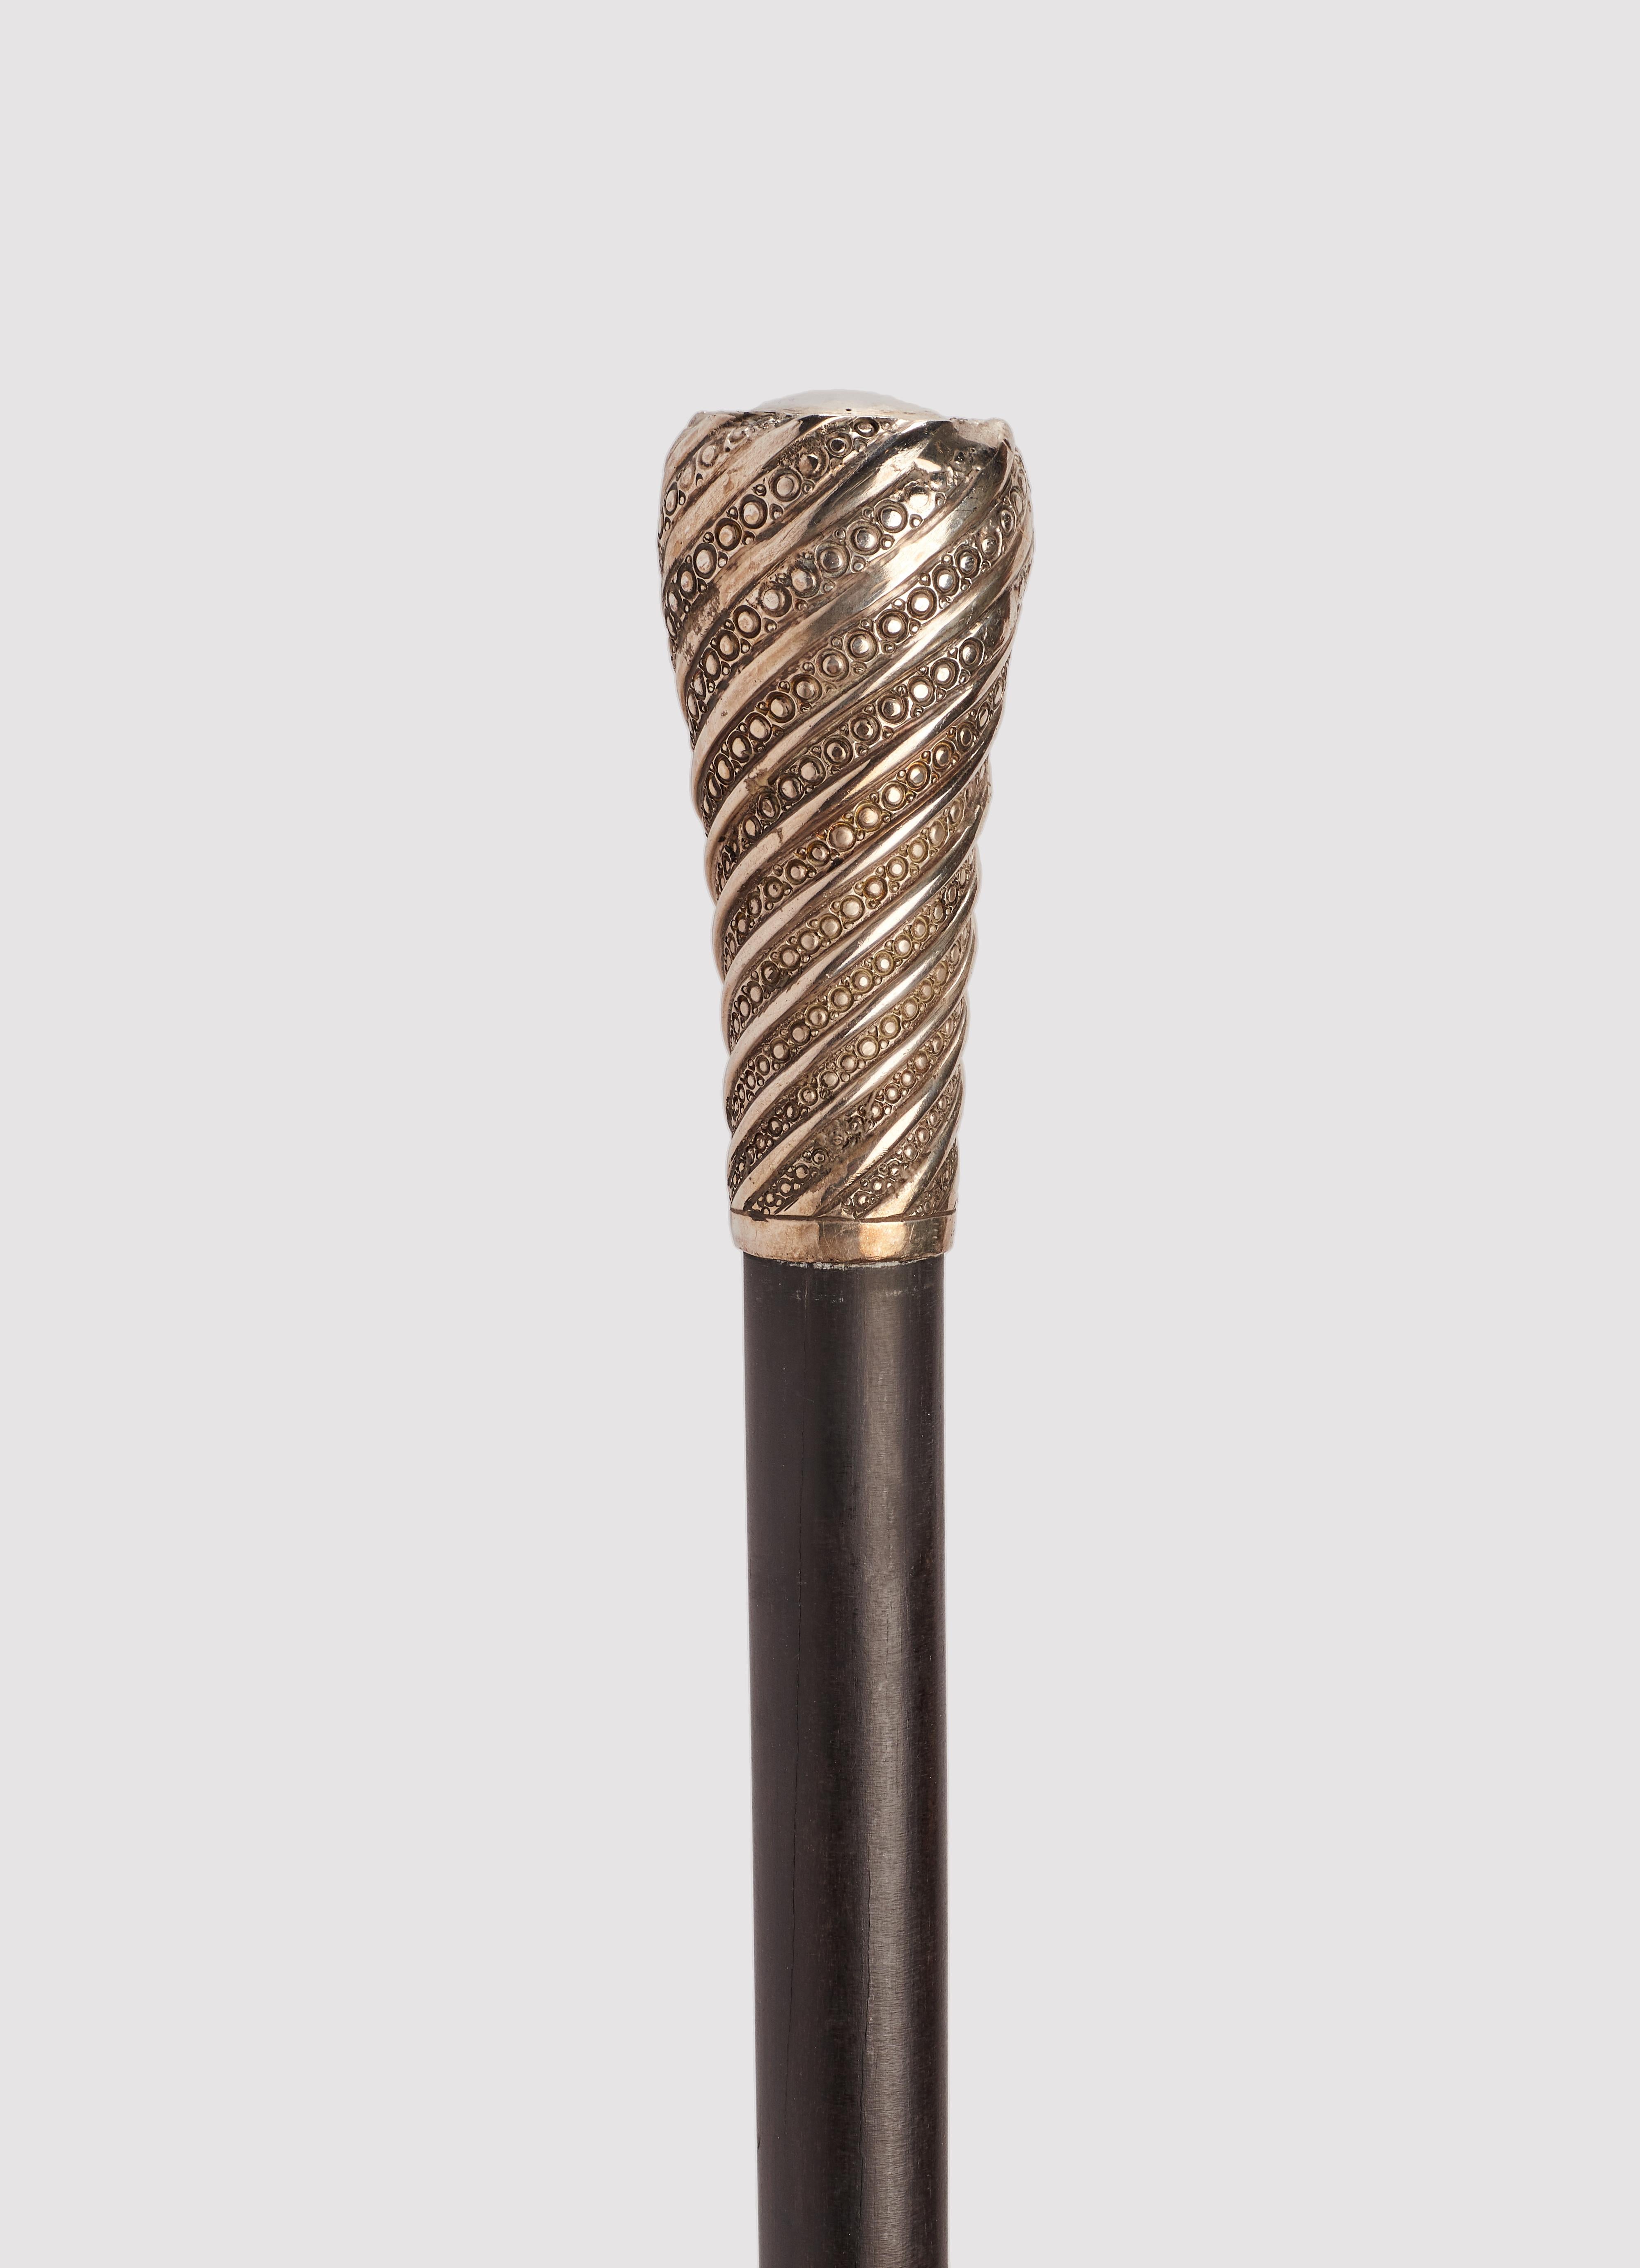 Spazierstock: silberner Griff, milord Form tourchon. Schaft aus Ebenholz. Metallhülse. Frankreich 1900 ca.